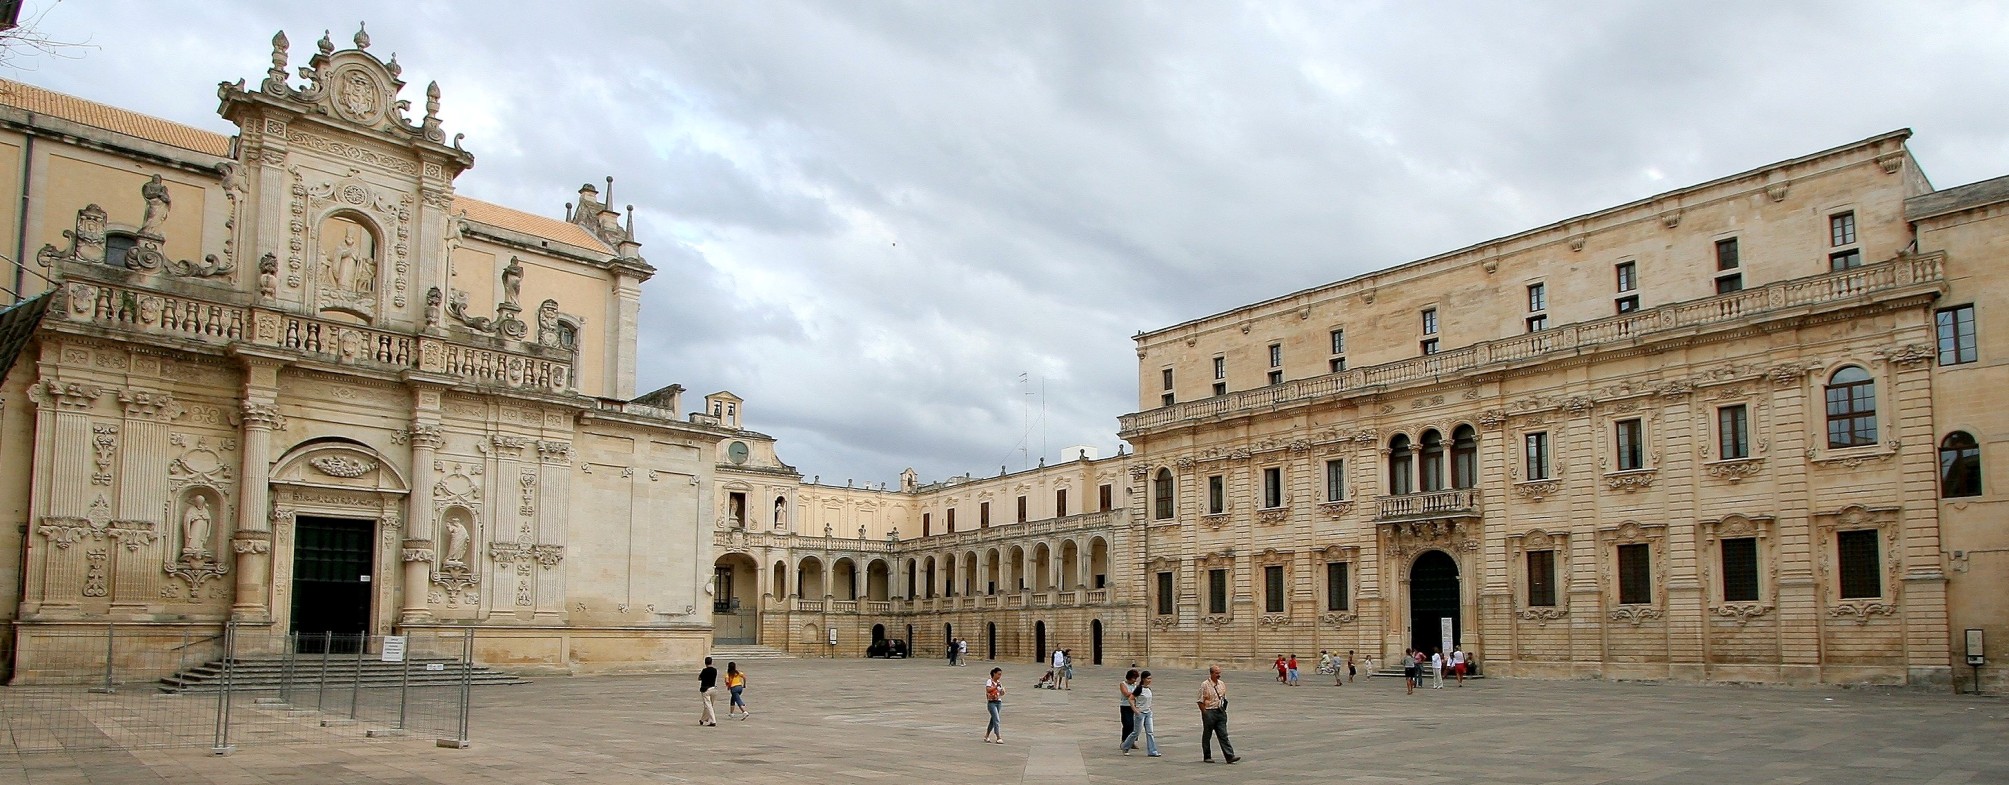 Piazza_Duomo Lecce Puglia